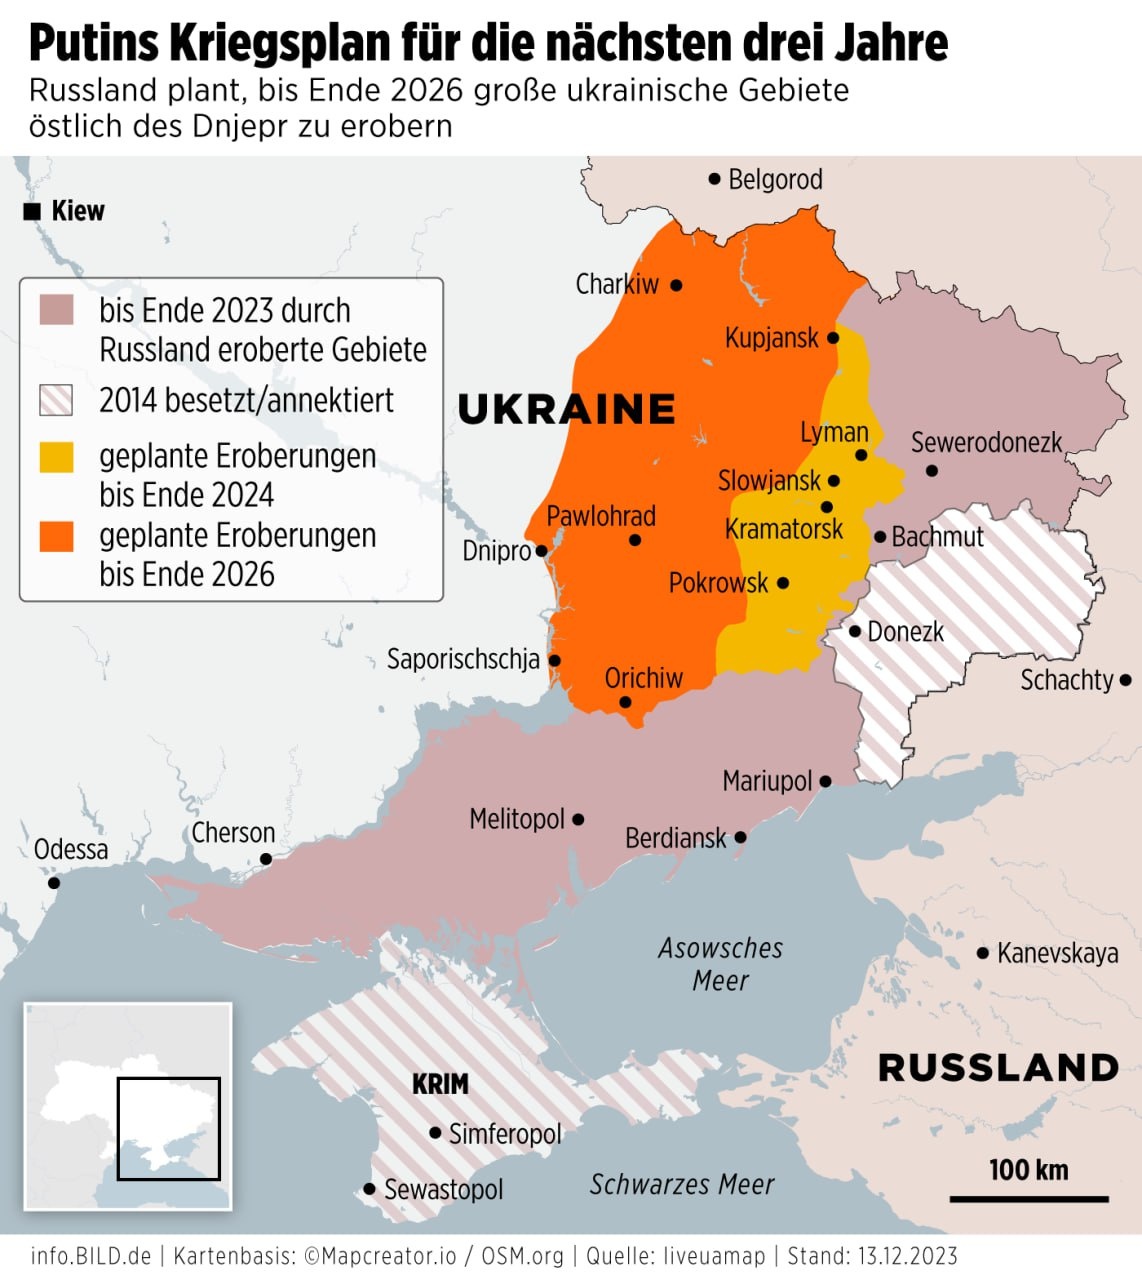 BILD розповів про плани Кремля щодо захоплення нових територій України